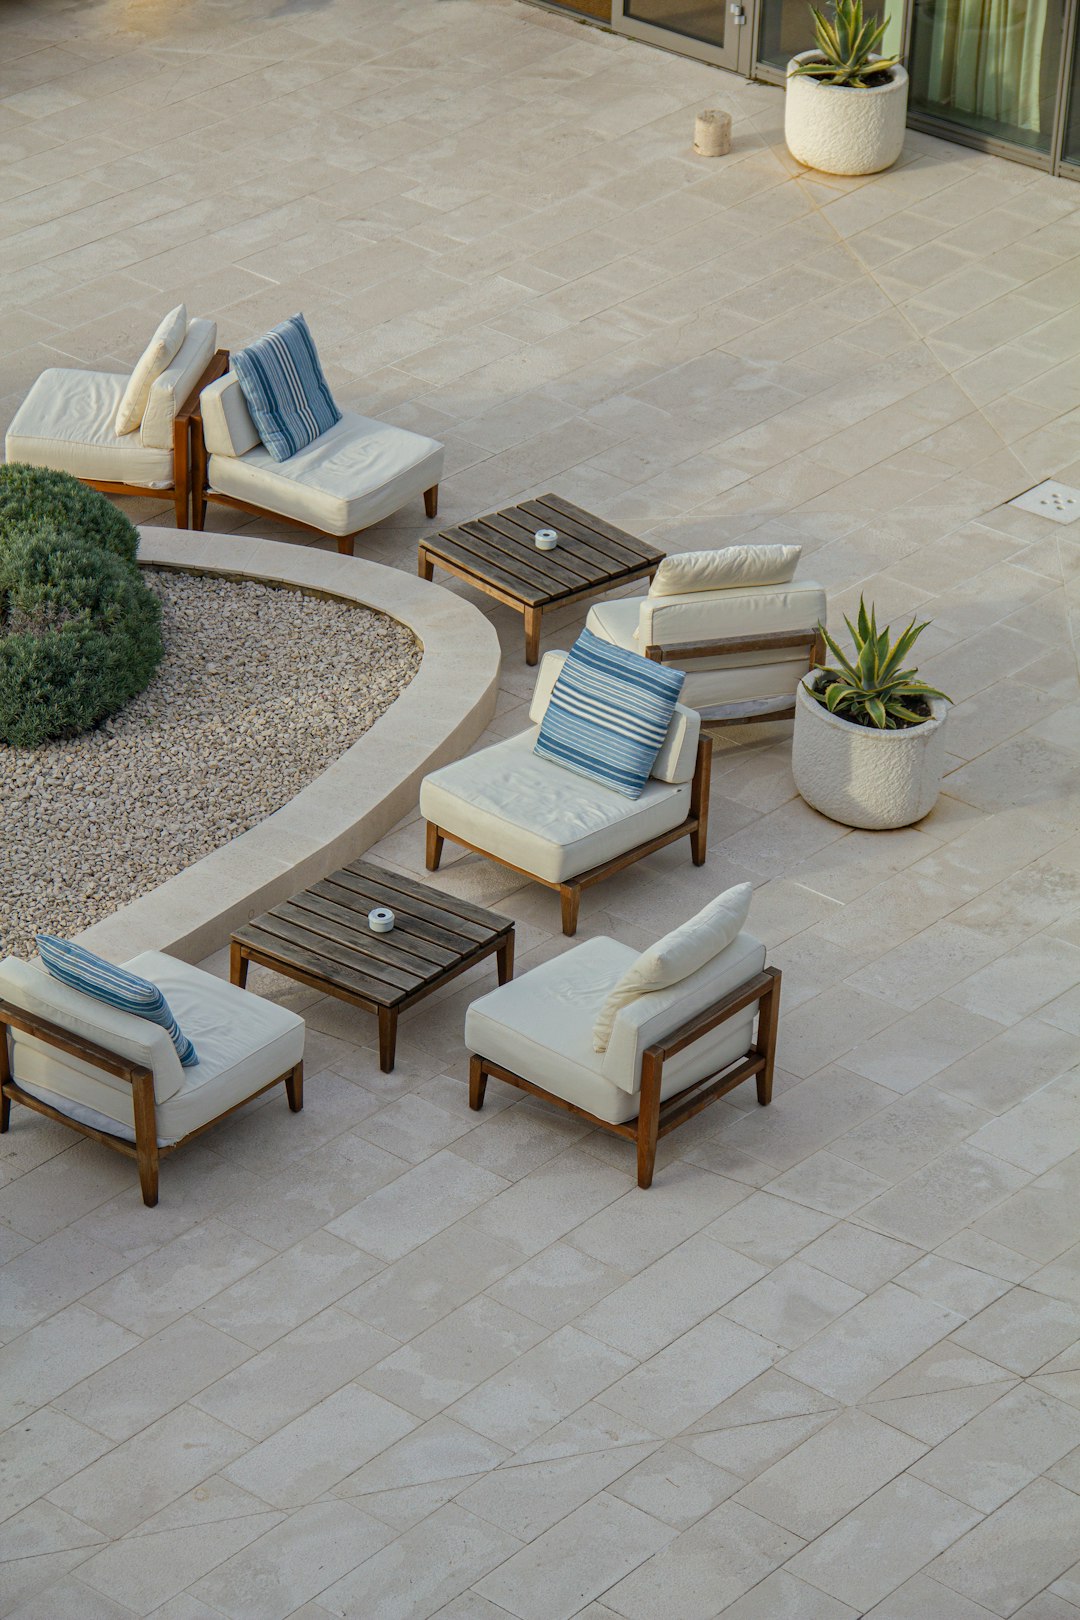 New garden furniture!